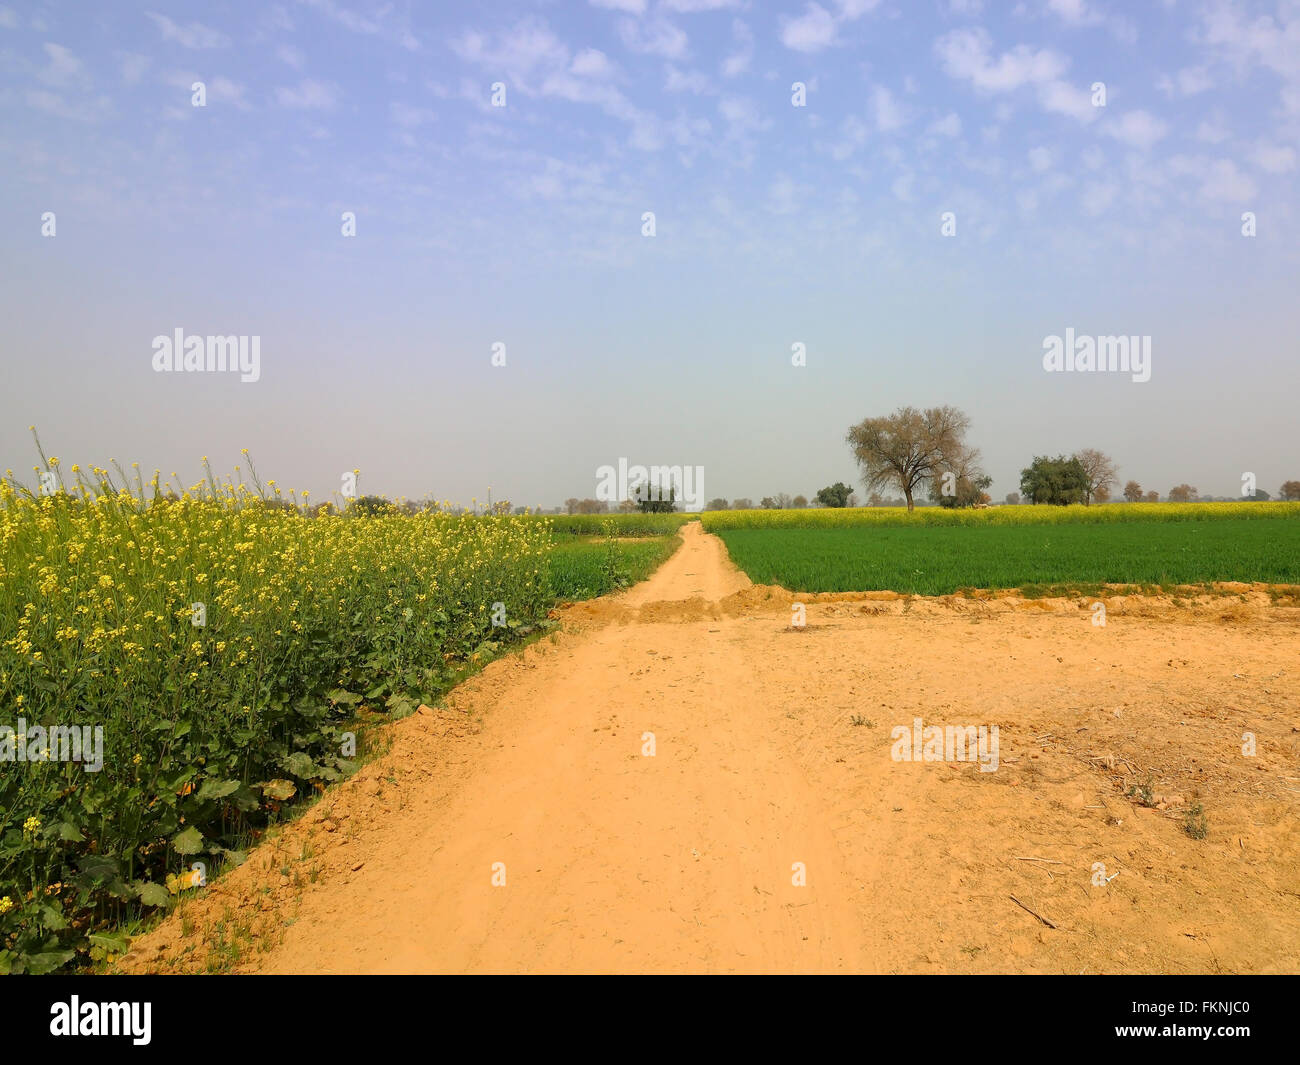 Senf und Weizen ernten in den sandigen Böden der ländlichen Abohar in Ferozepur Bezirk von Rajasthan im Norden Indiens. Stockfoto